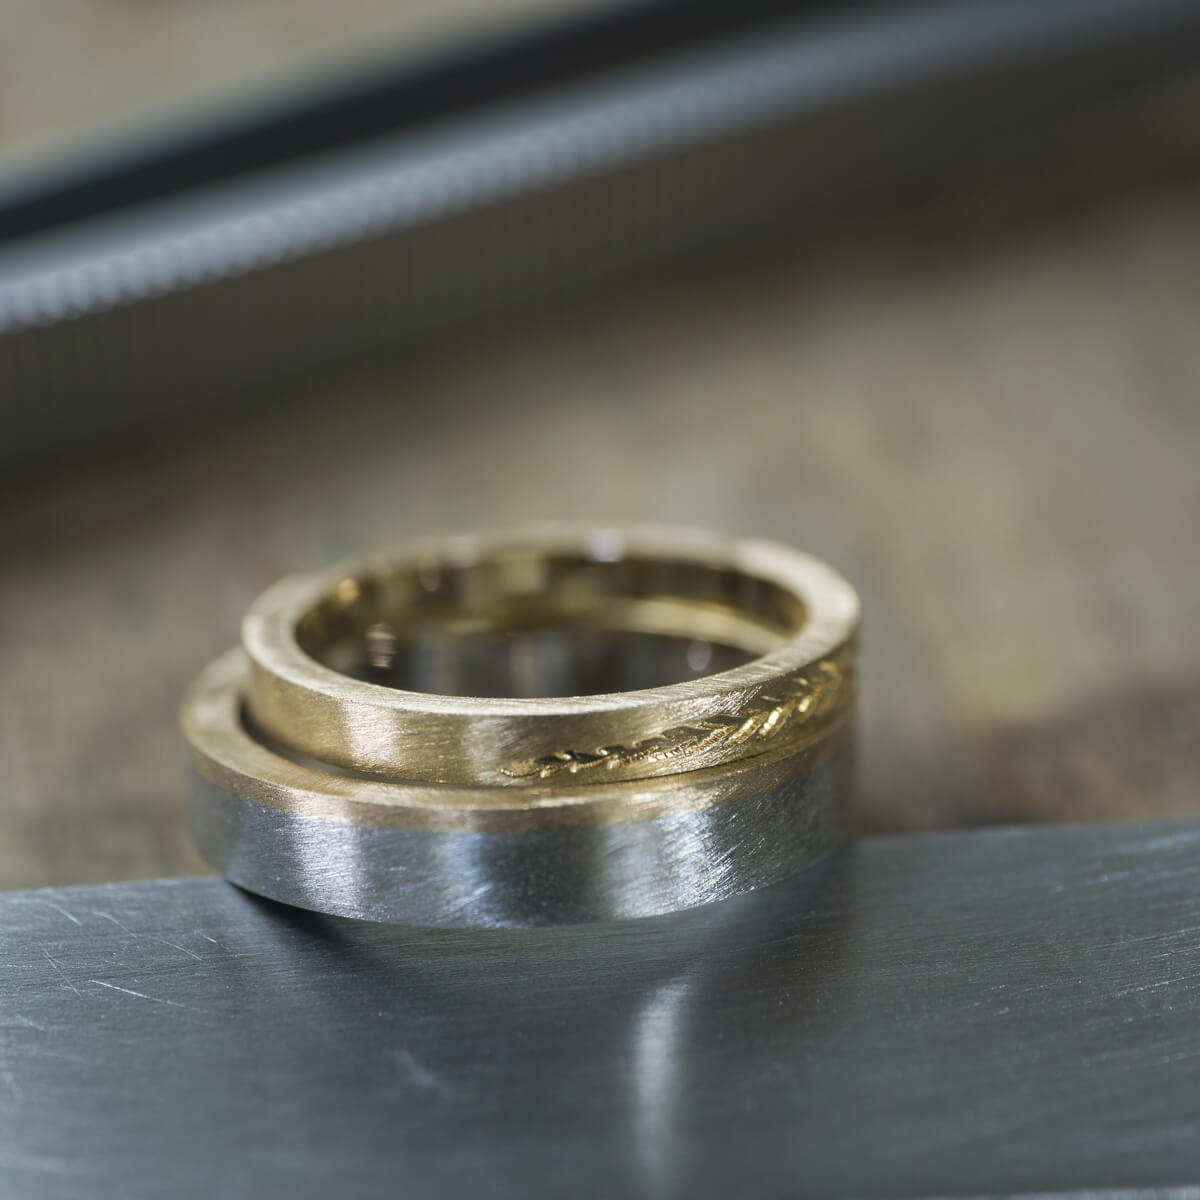 オーダーメイド結婚指輪の制作風景　ジュエリーのアトリエ　屋久島のシダモチーフ　ゴールド、プラチナ　屋久島でつくる結婚指輪